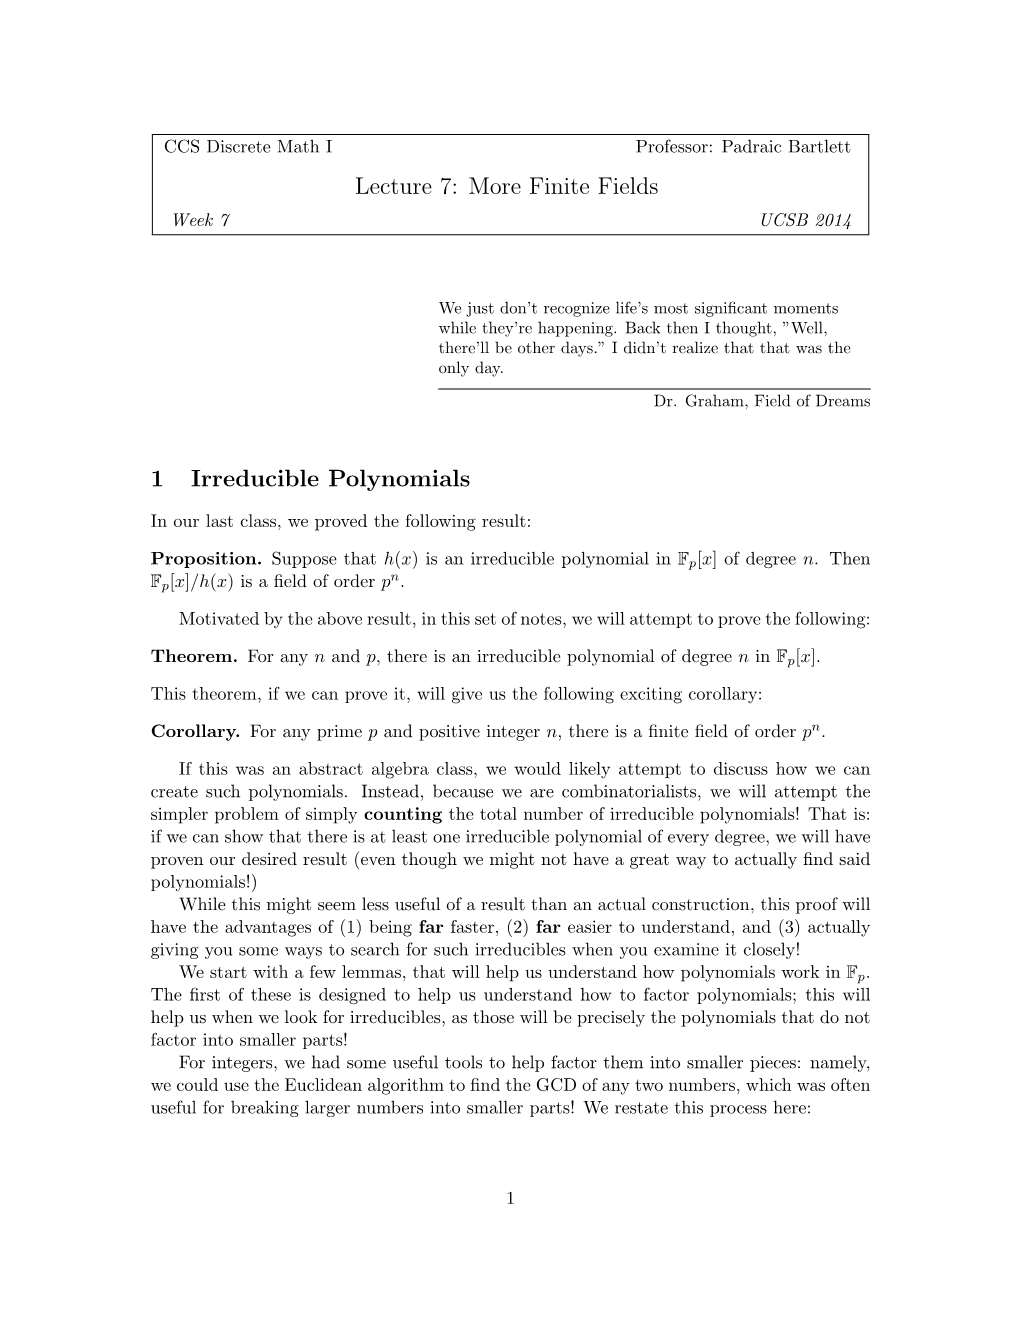 Lecture 7: More Finite Fields 1 Irreducible Polynomials